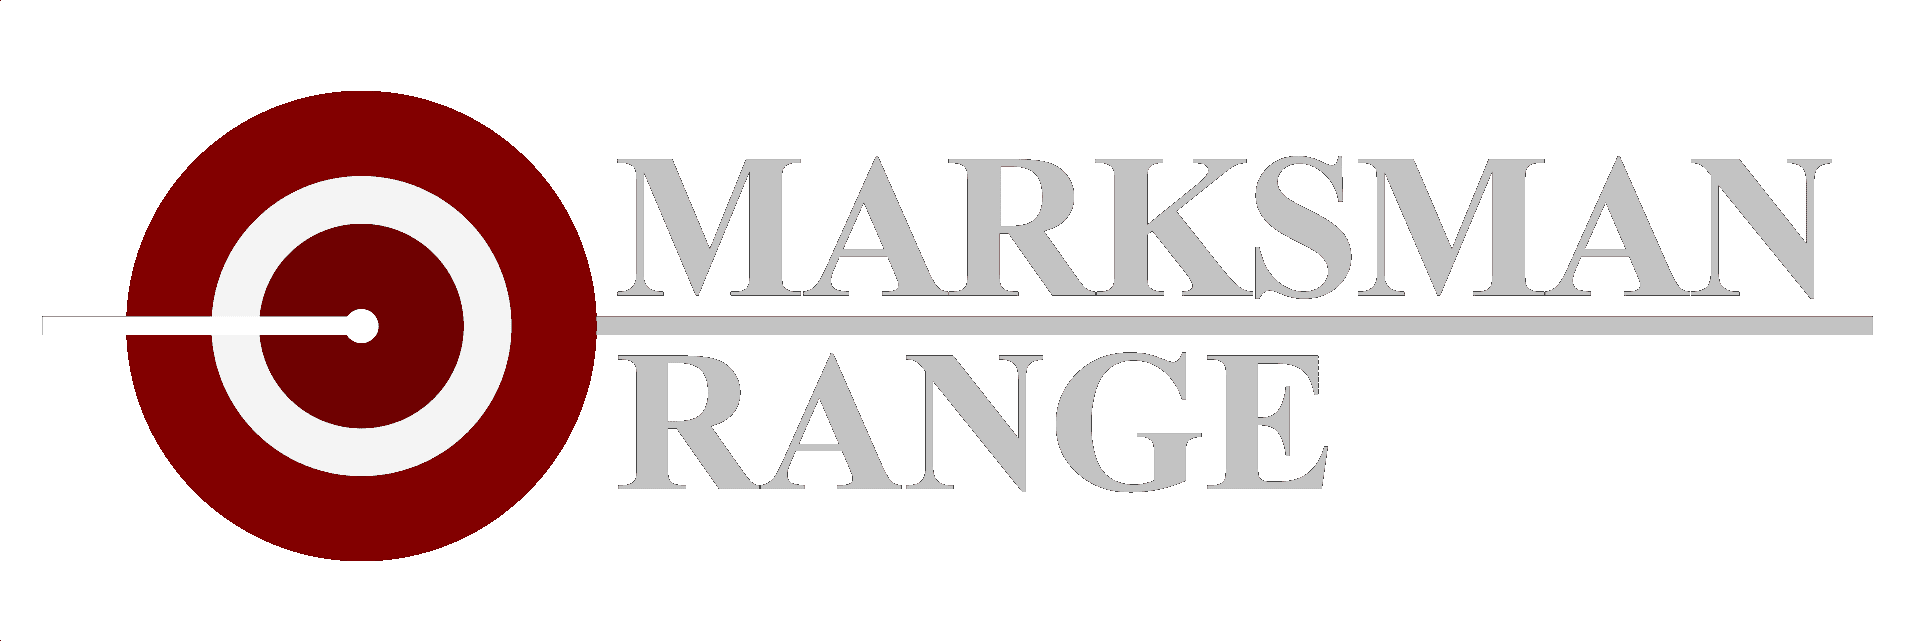 Marksman Range